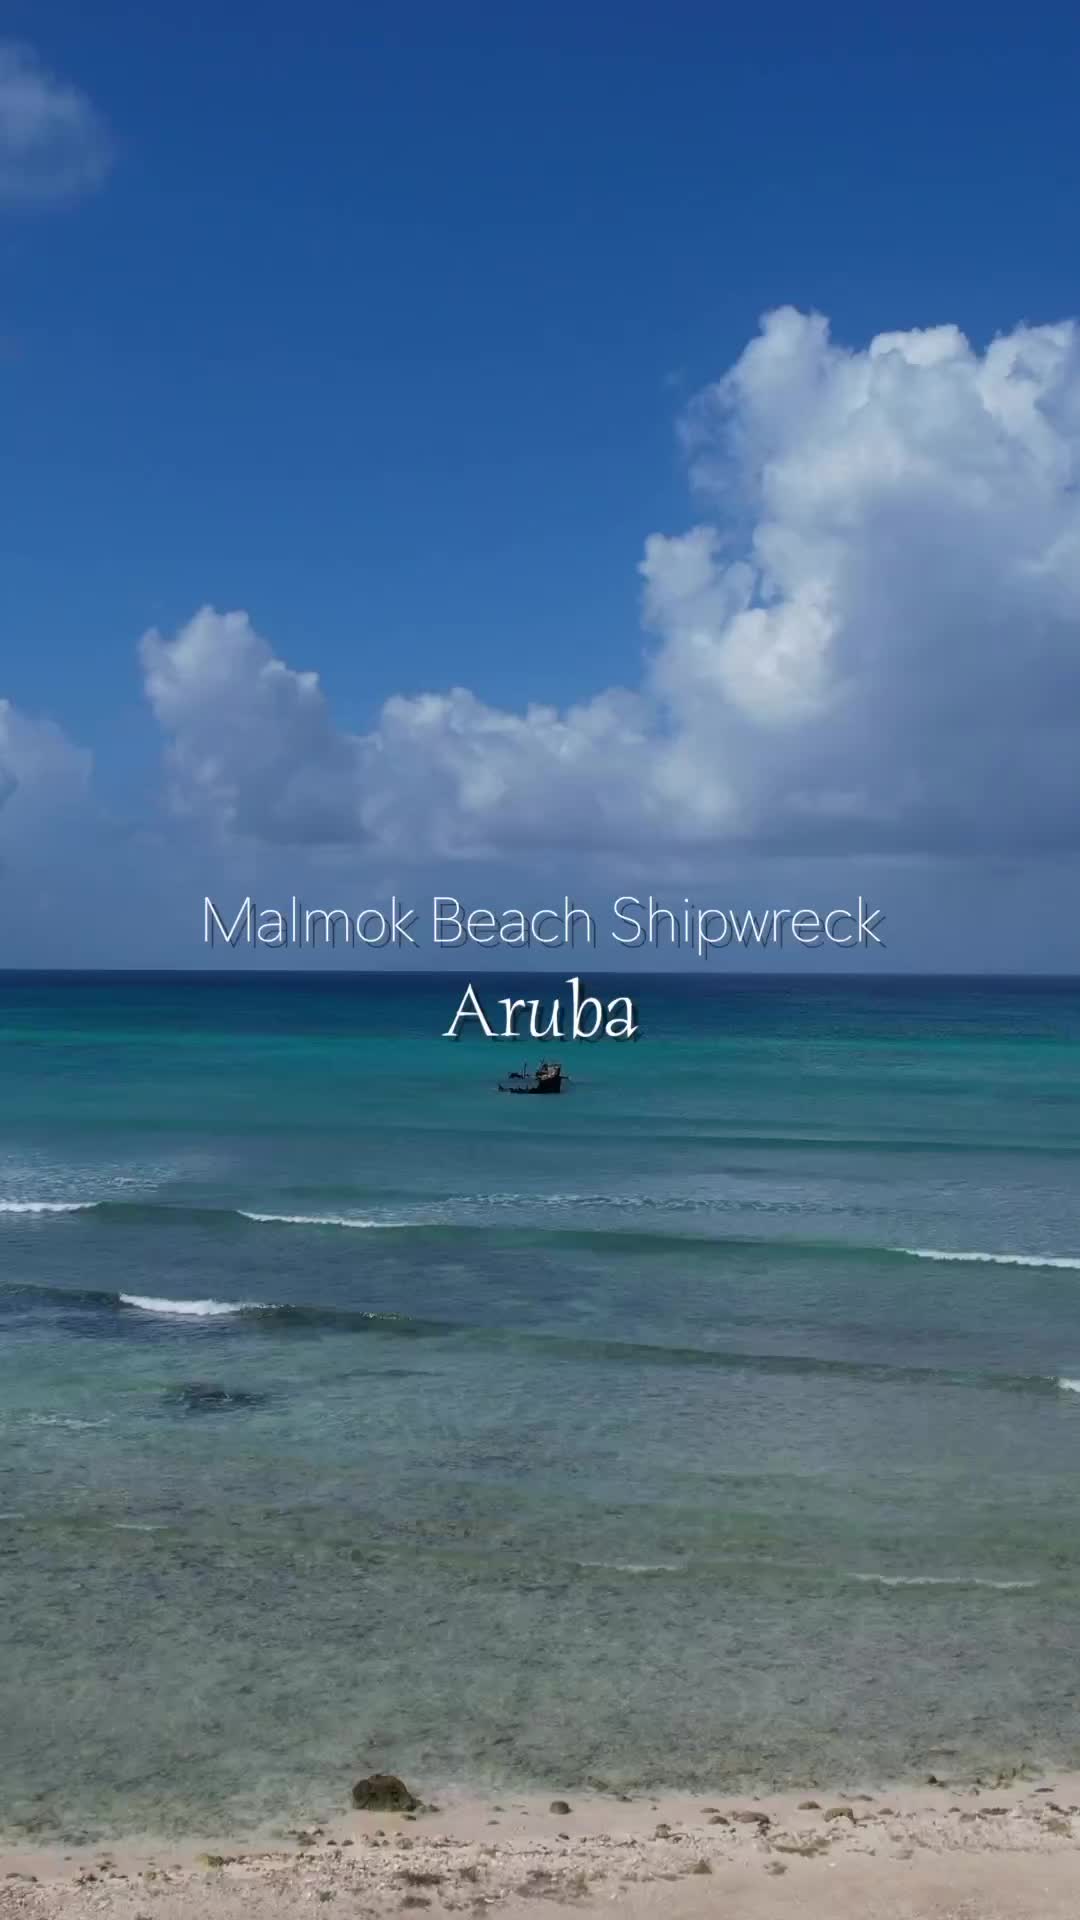 Shipwreck & Nesting Birds at Malmok Beach, Aruba